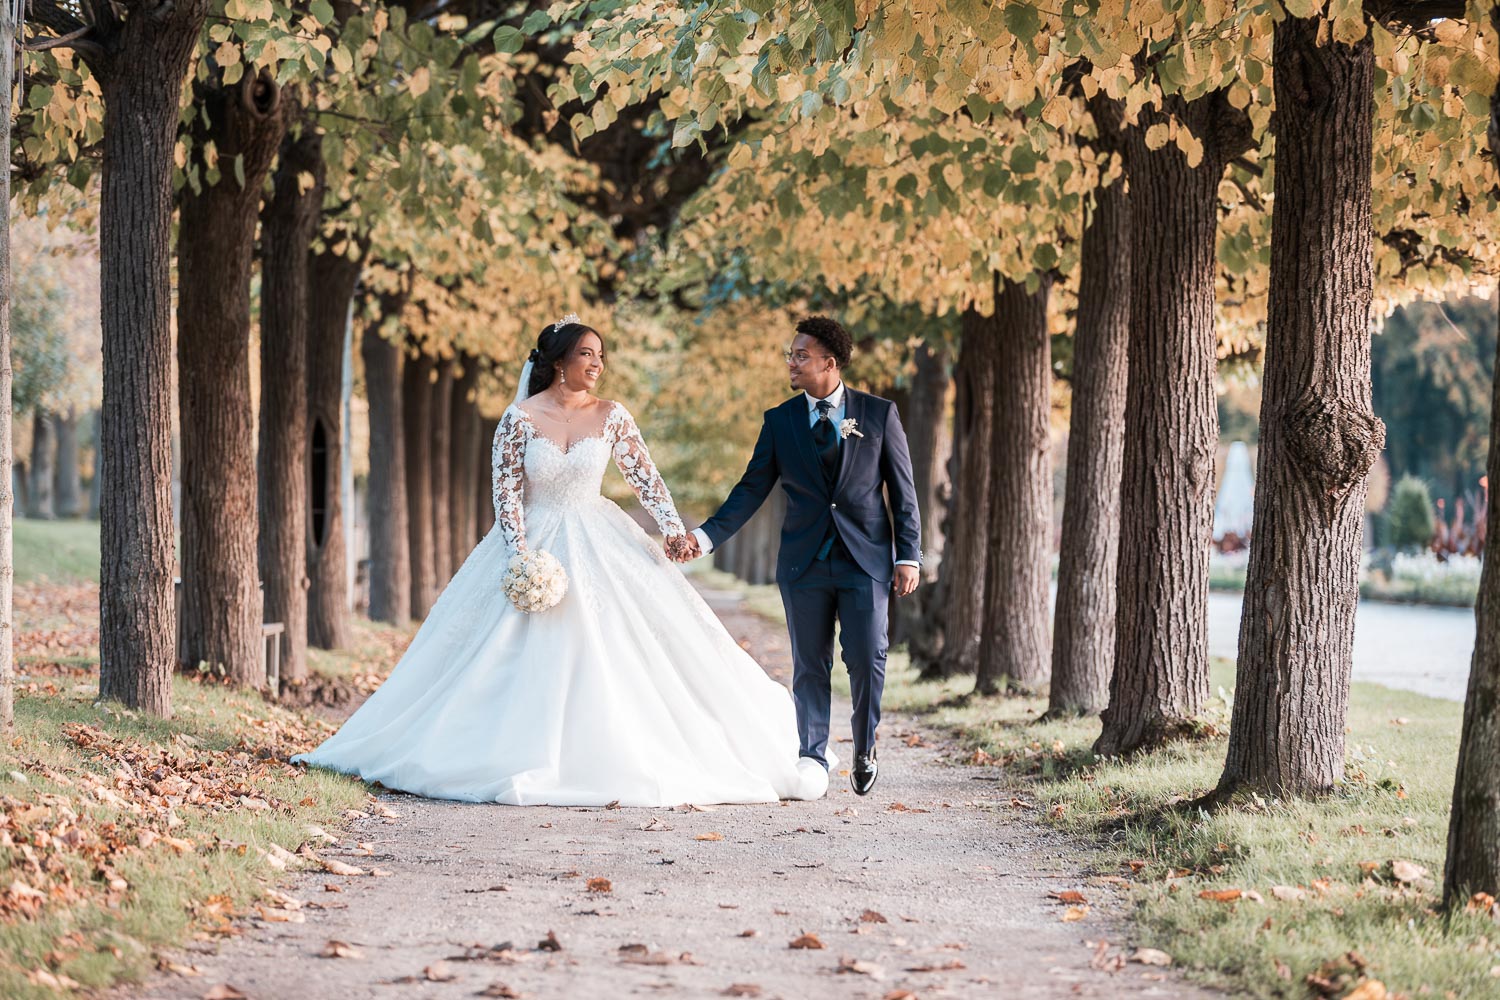 Das hübsche Brautpaar, Hand in Hand, spaziert durch eine kleine Allee im Schlossgarten Augustusburg, die direkt auf den Hochzeitsfotografen zuführt. Von der Perspektive des Fotos aus betrachtet, befindet sich links parallel dazu eine größere Allee.